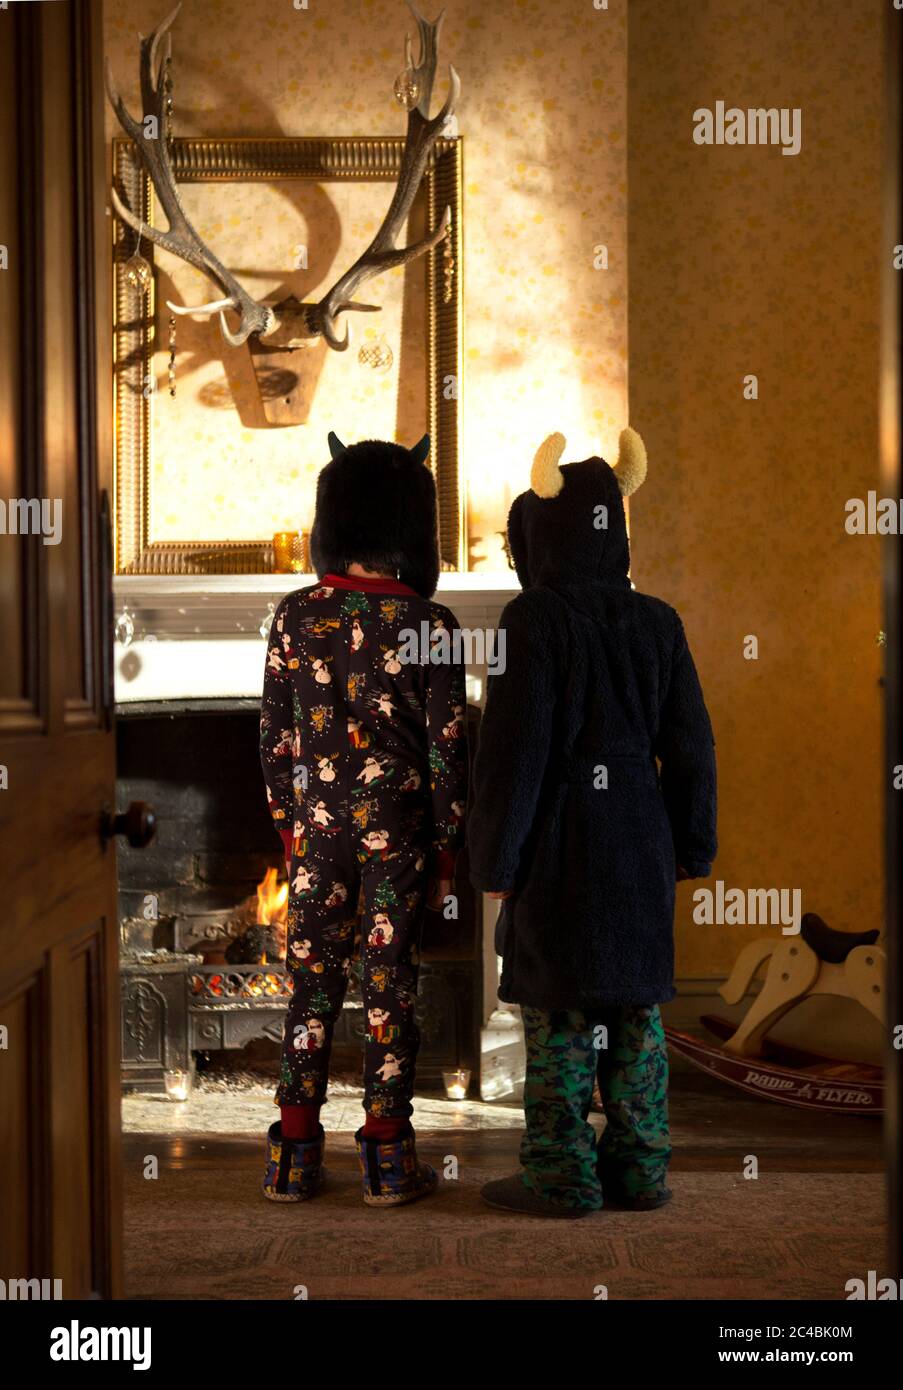 Vue arrière de deux enfants portant un pyjama, un peignoir en éponge et des chapeaux devant une cheminée, trophée de chasse sur le mur. Banque D'Images